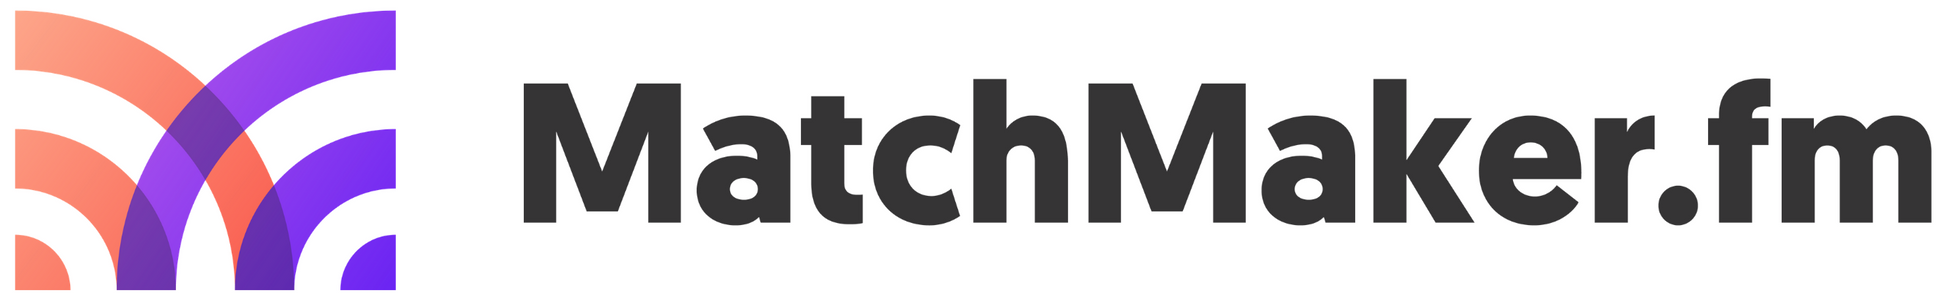 MatchMaker FM Logo